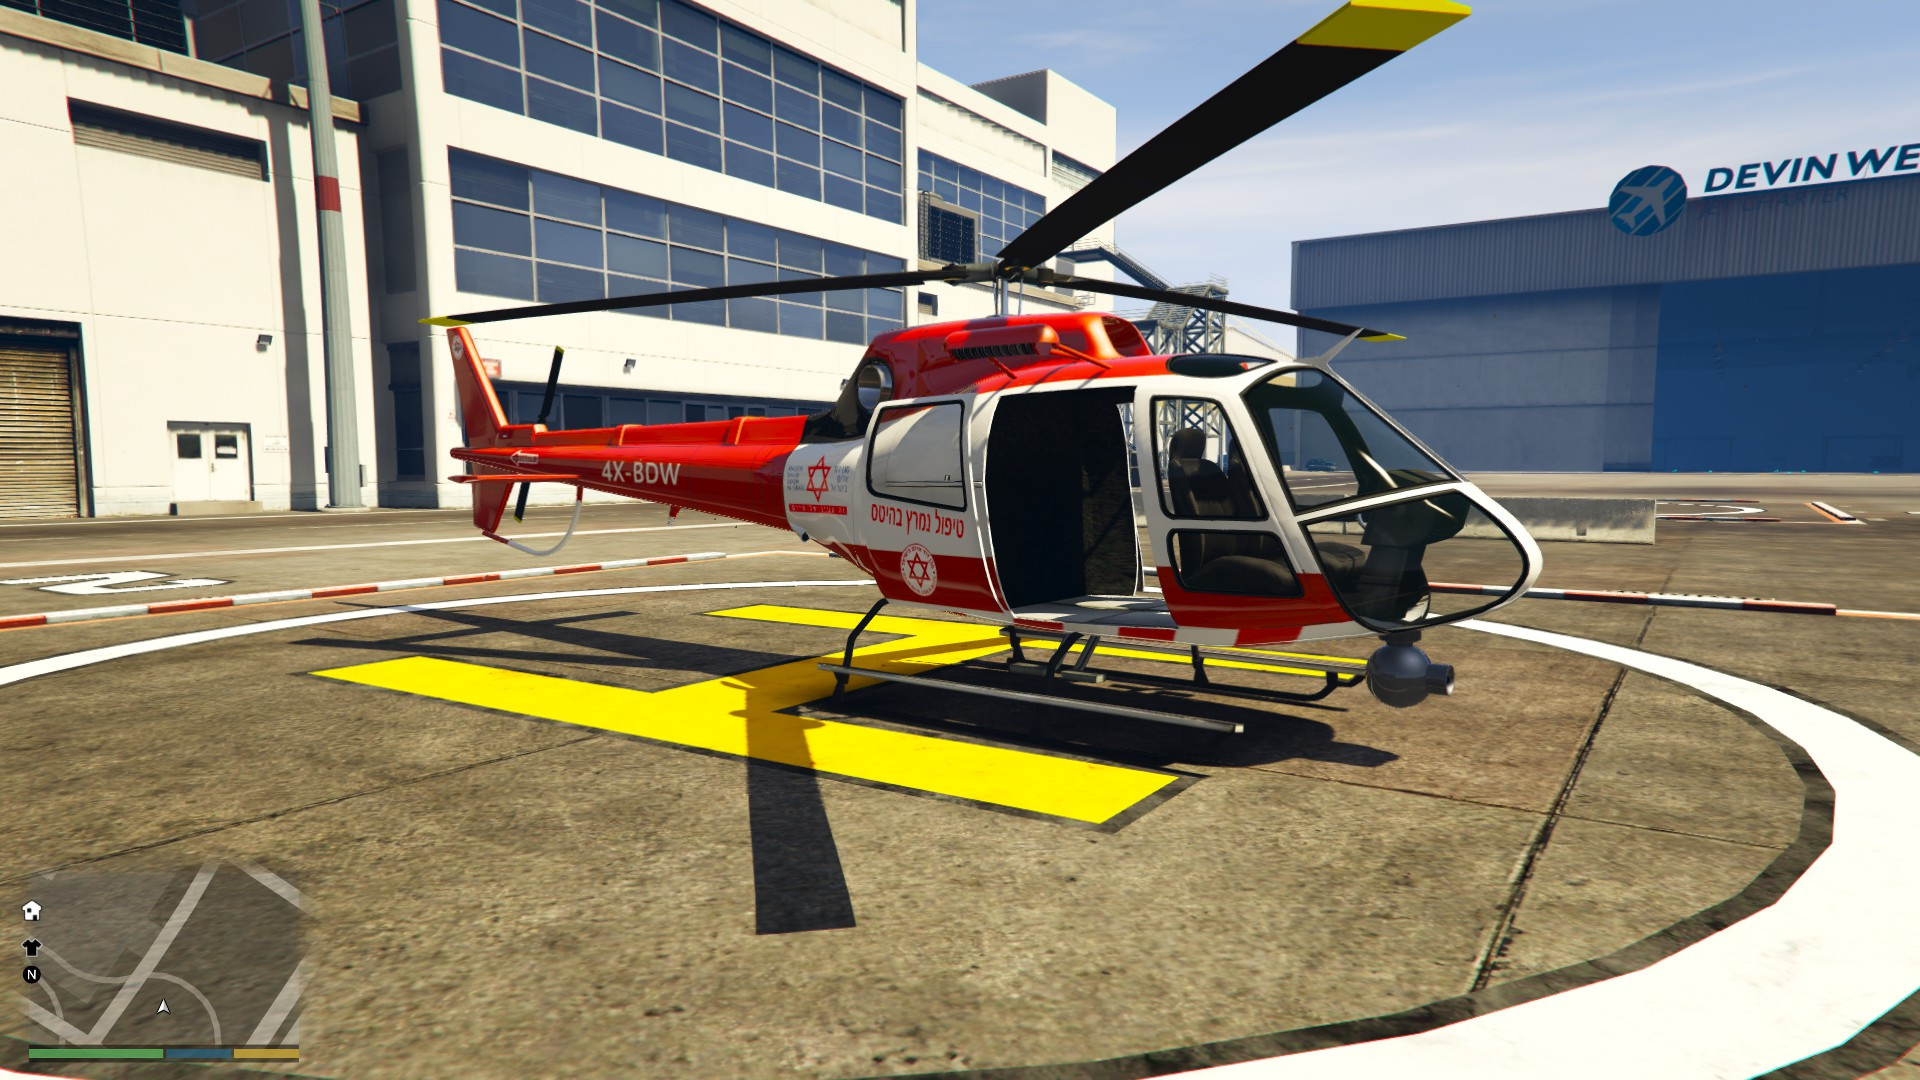 Police Helicopter GTA 5. Медицинский вертолет ГТА 5. Вертолет полиции в ГТА 5. Медицинский вертолет США. Игры гта вертолеты